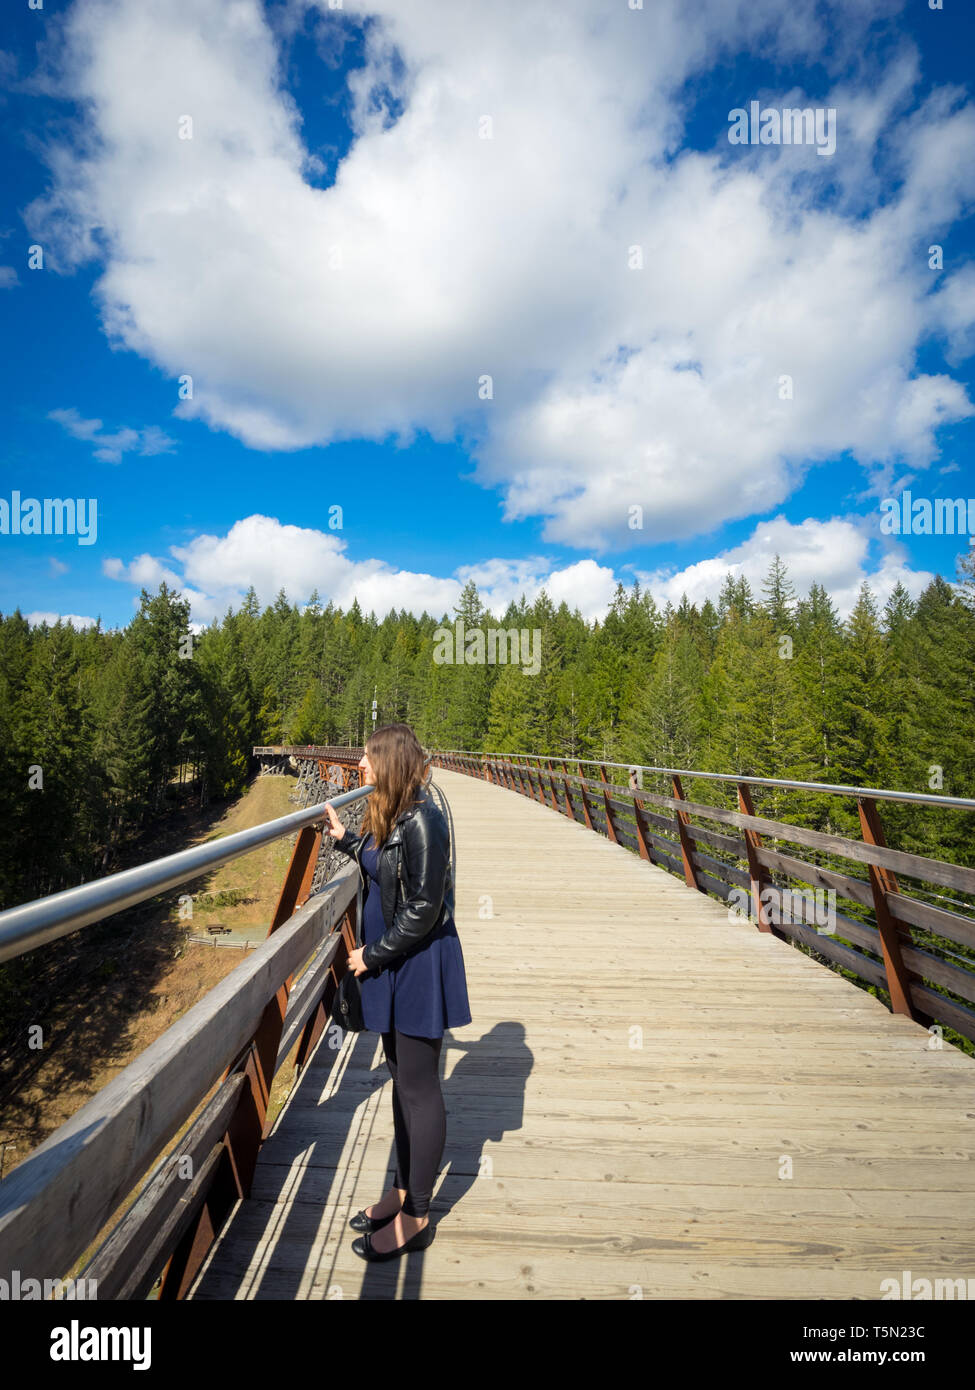 Une jolie fille brune donne du milieu du pont sur chevalets Kinsol dans la vallée de Cowichan, île de Vancouver, Colombie-Britannique, Canada. Banque D'Images